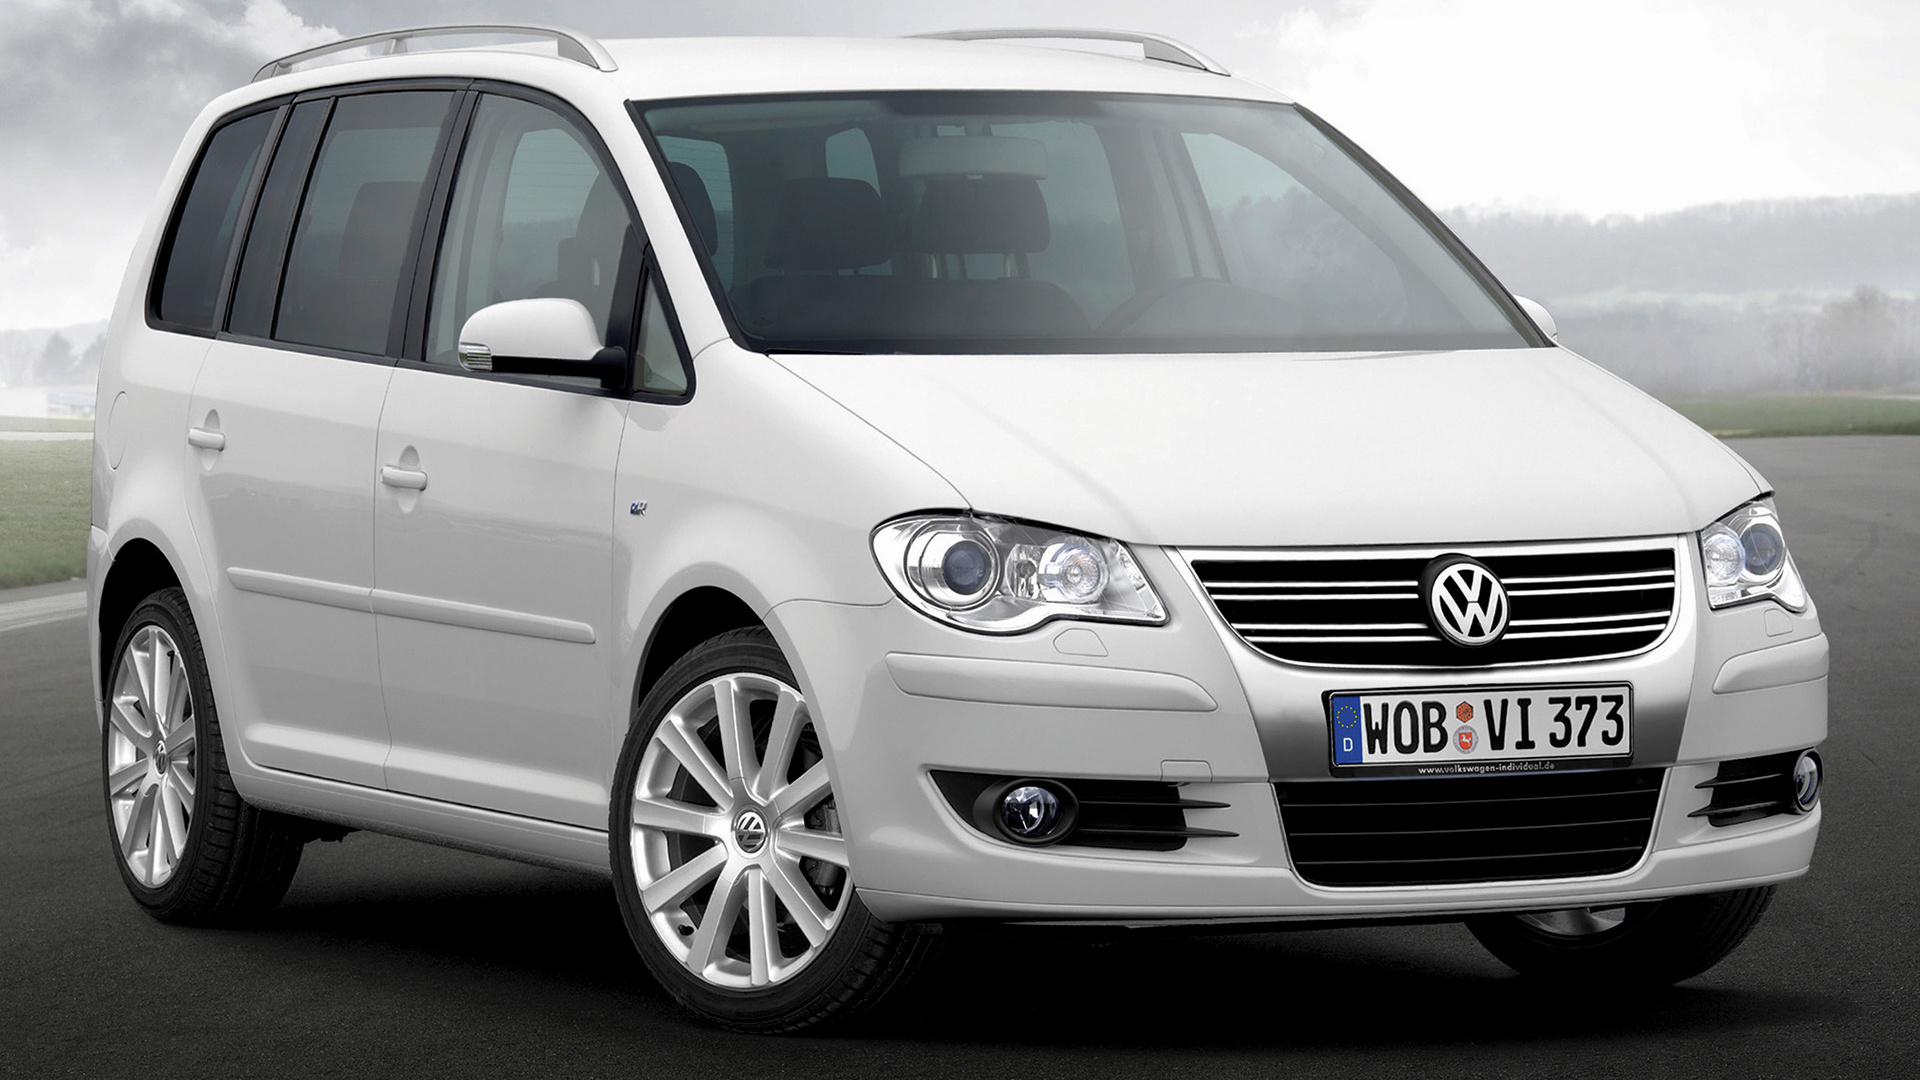 Spektakel Smaak driehoek 2007 Volkswagen Touran R-Line - Achtergronden en HD Wallpaper | Car Pixel